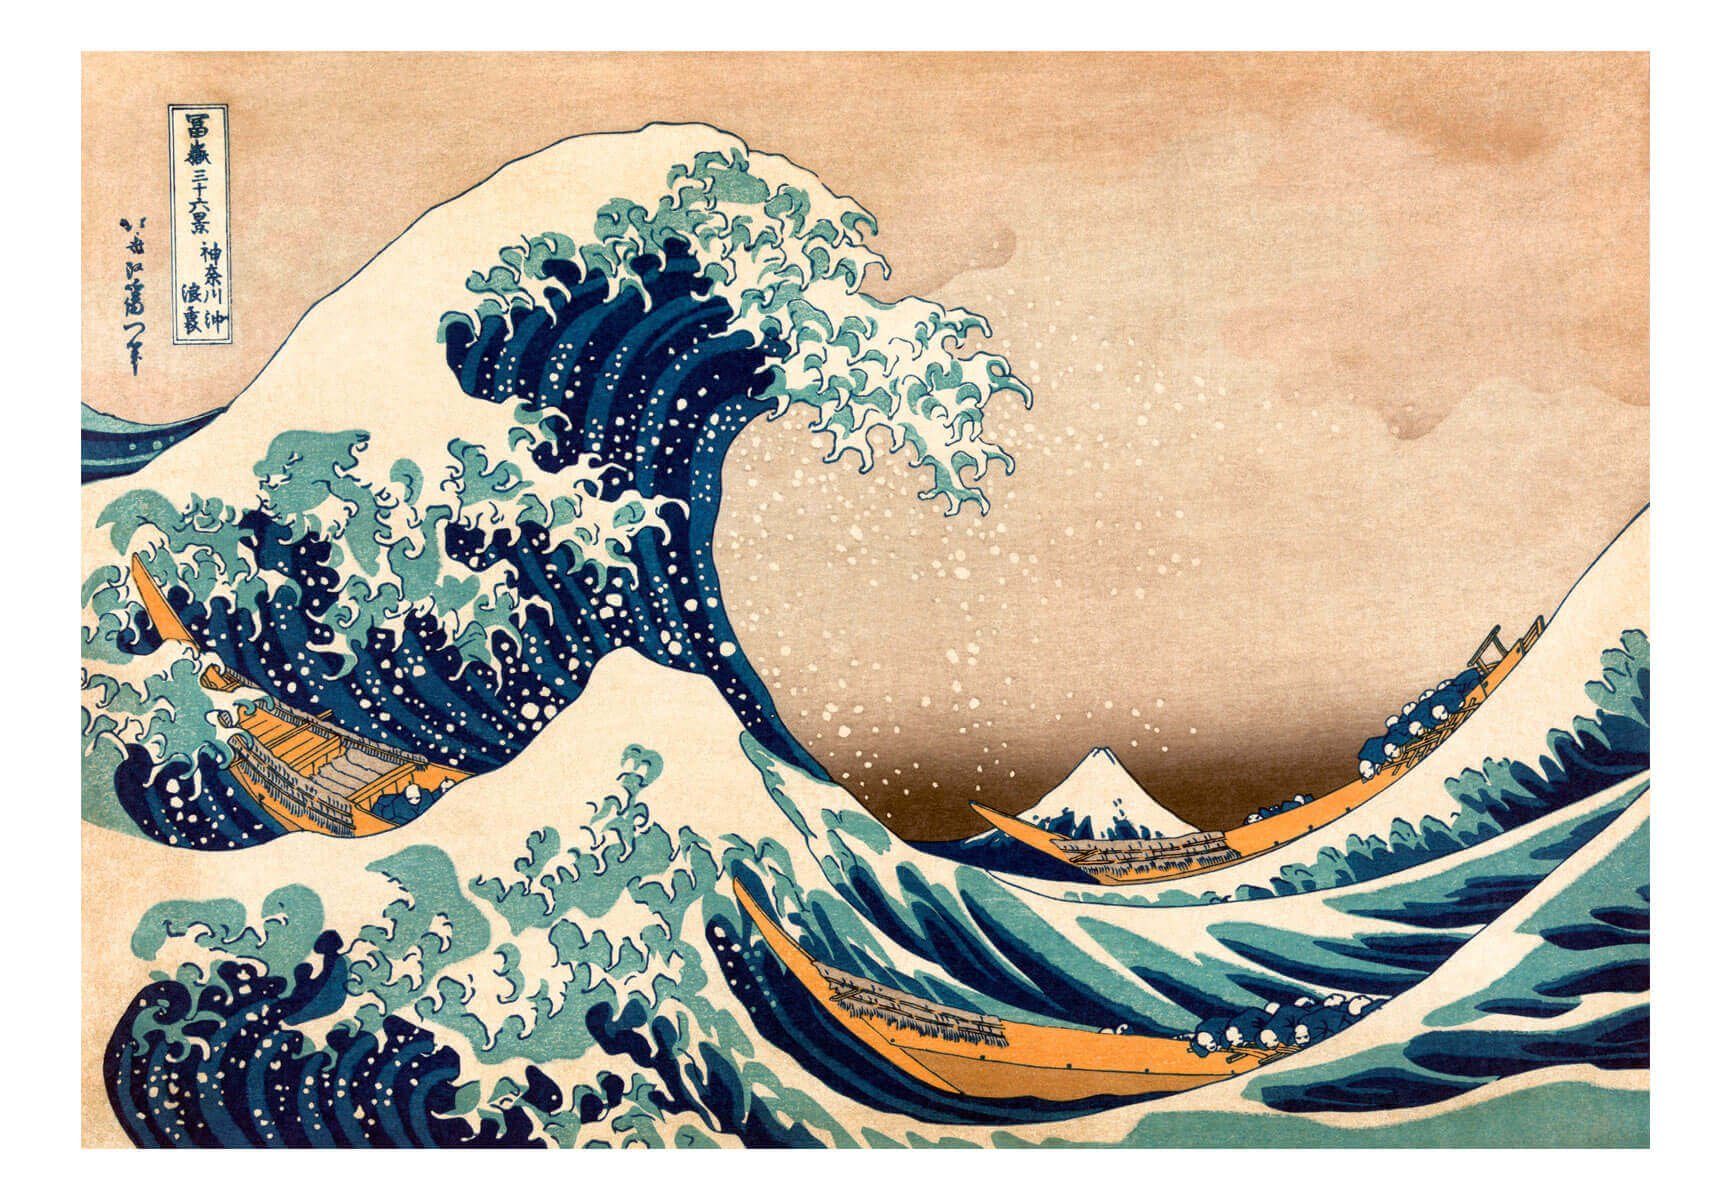 KUNSTLOFT Vliestapete Hommage an Hokusai 1x0.7 m, halb-matt, lichtbeständige Design Tapete